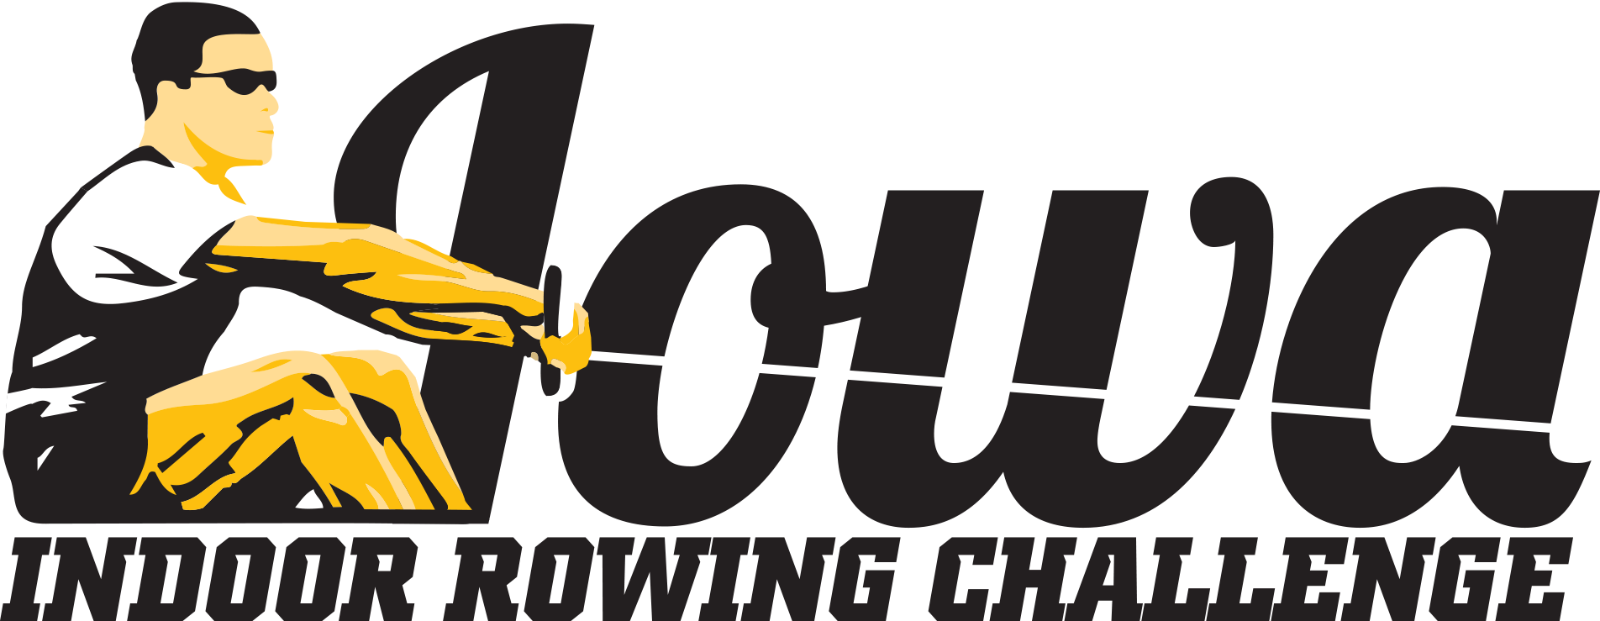 Iowa Indoor Rowing Challenge logo